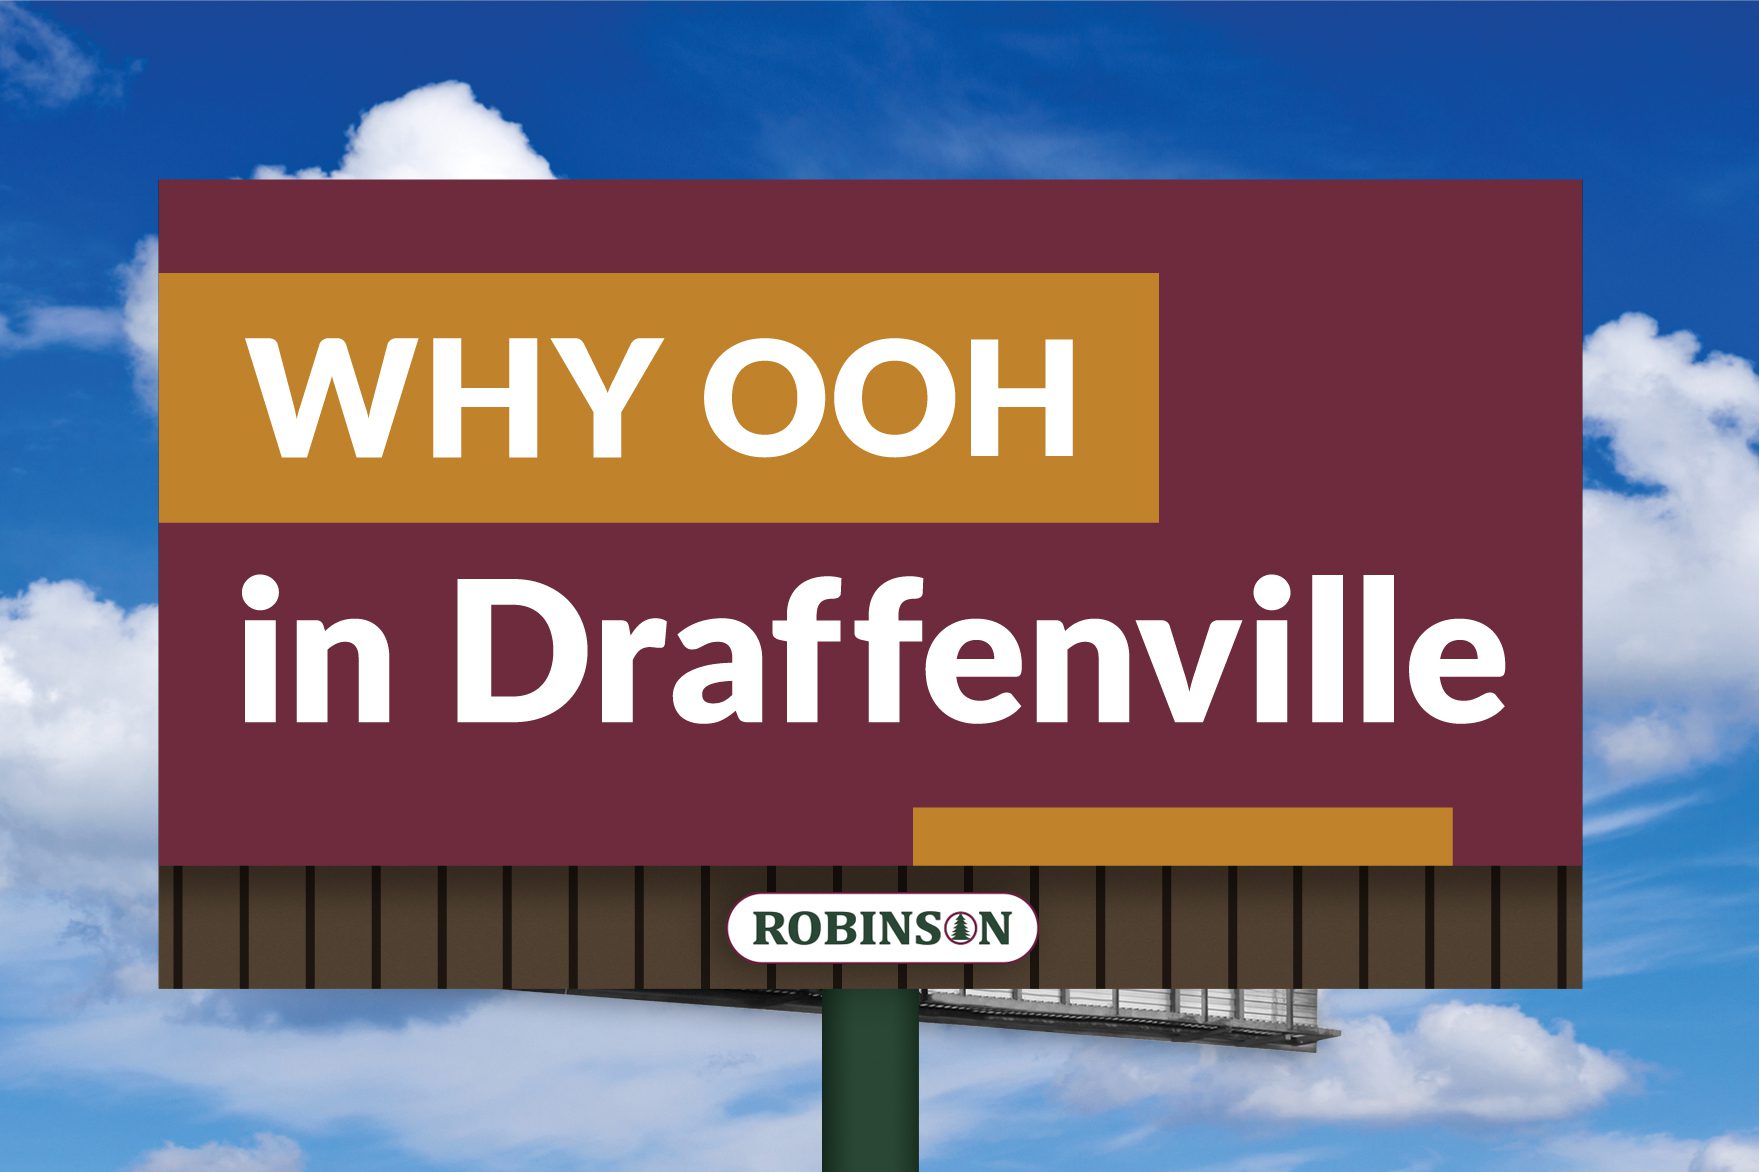 Draffenville, Kentucky digital billboard advertising